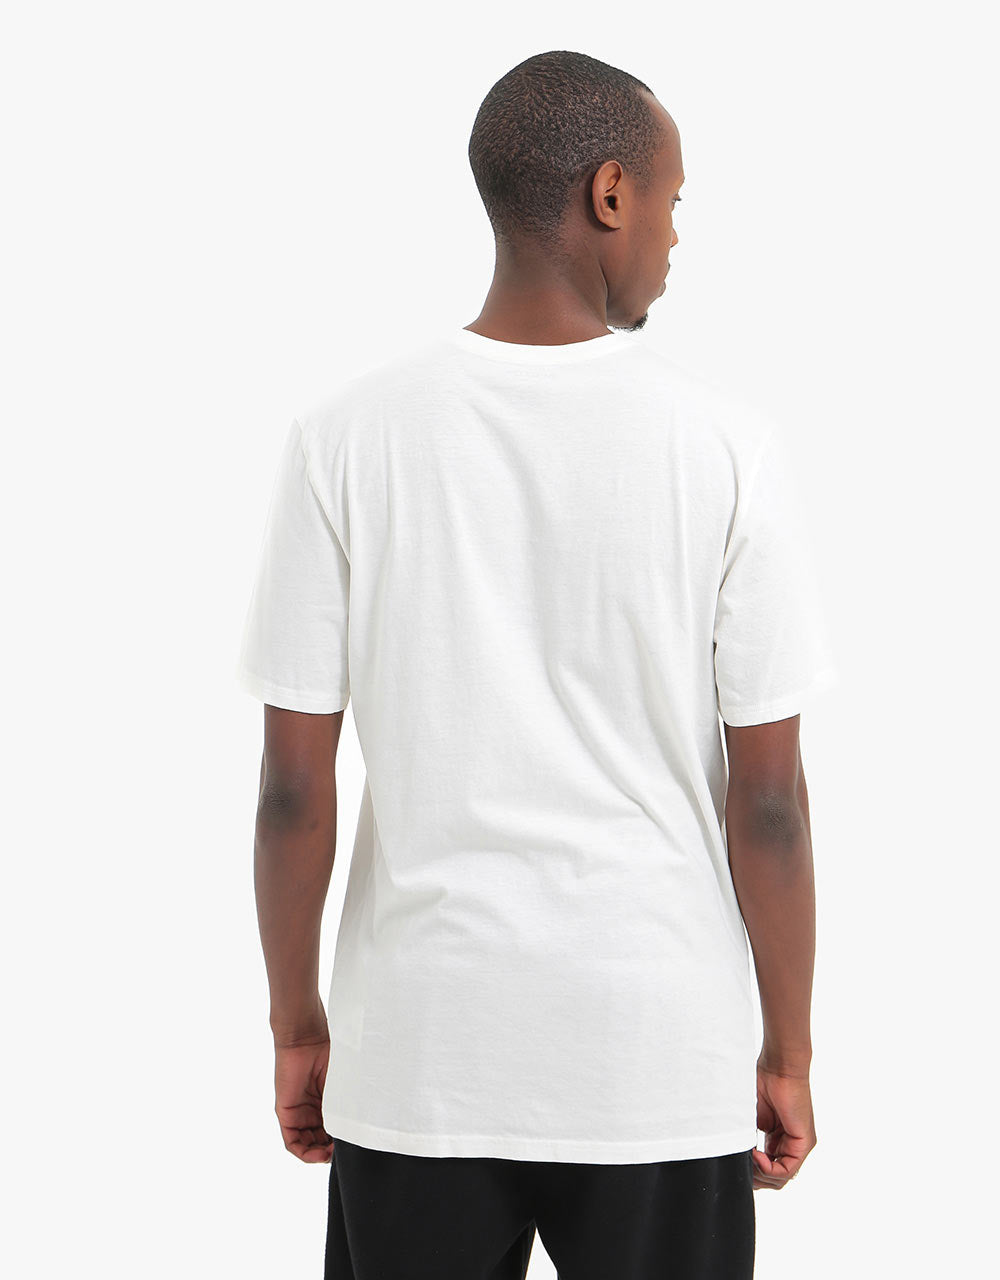 Burton Underhill T-Shirt - Stout White